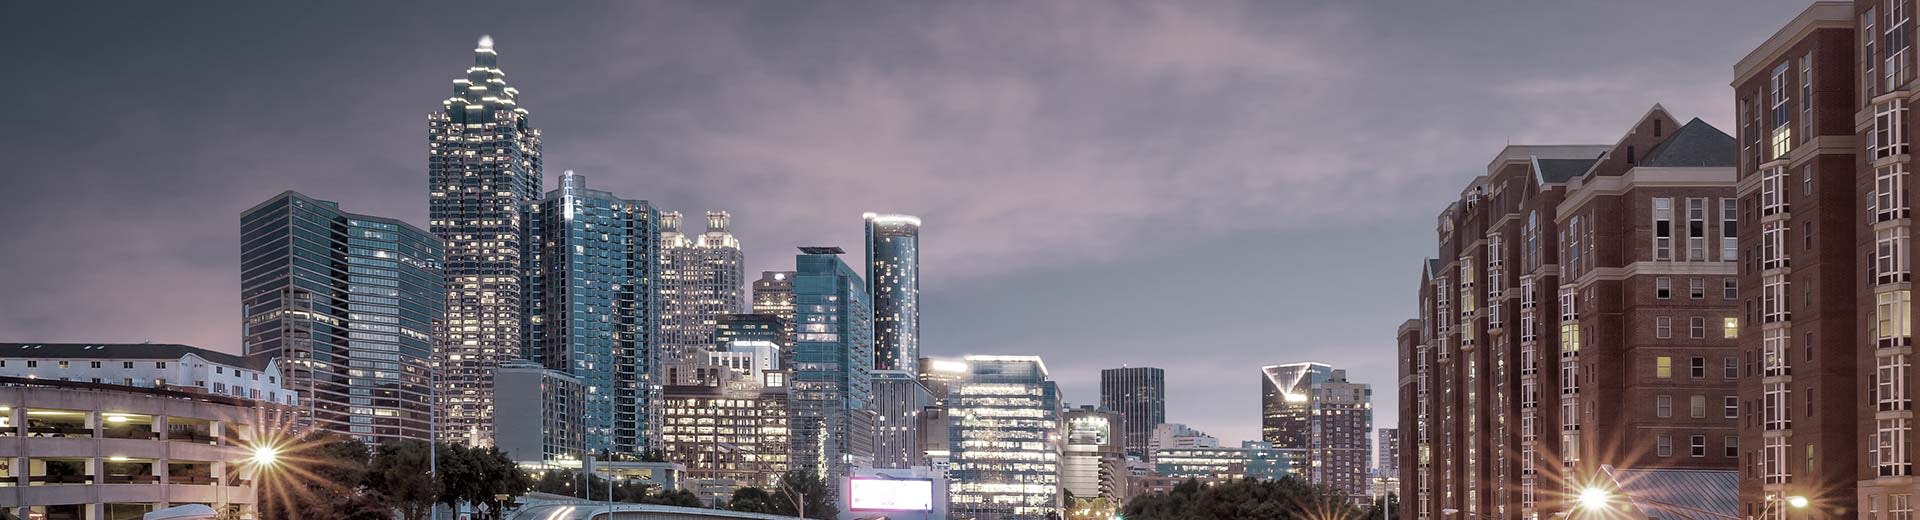 Image de la ligne d'horizon de la ville d'Atlanta dans la soirée, avec les lumières du bâtiment créant une lueur.